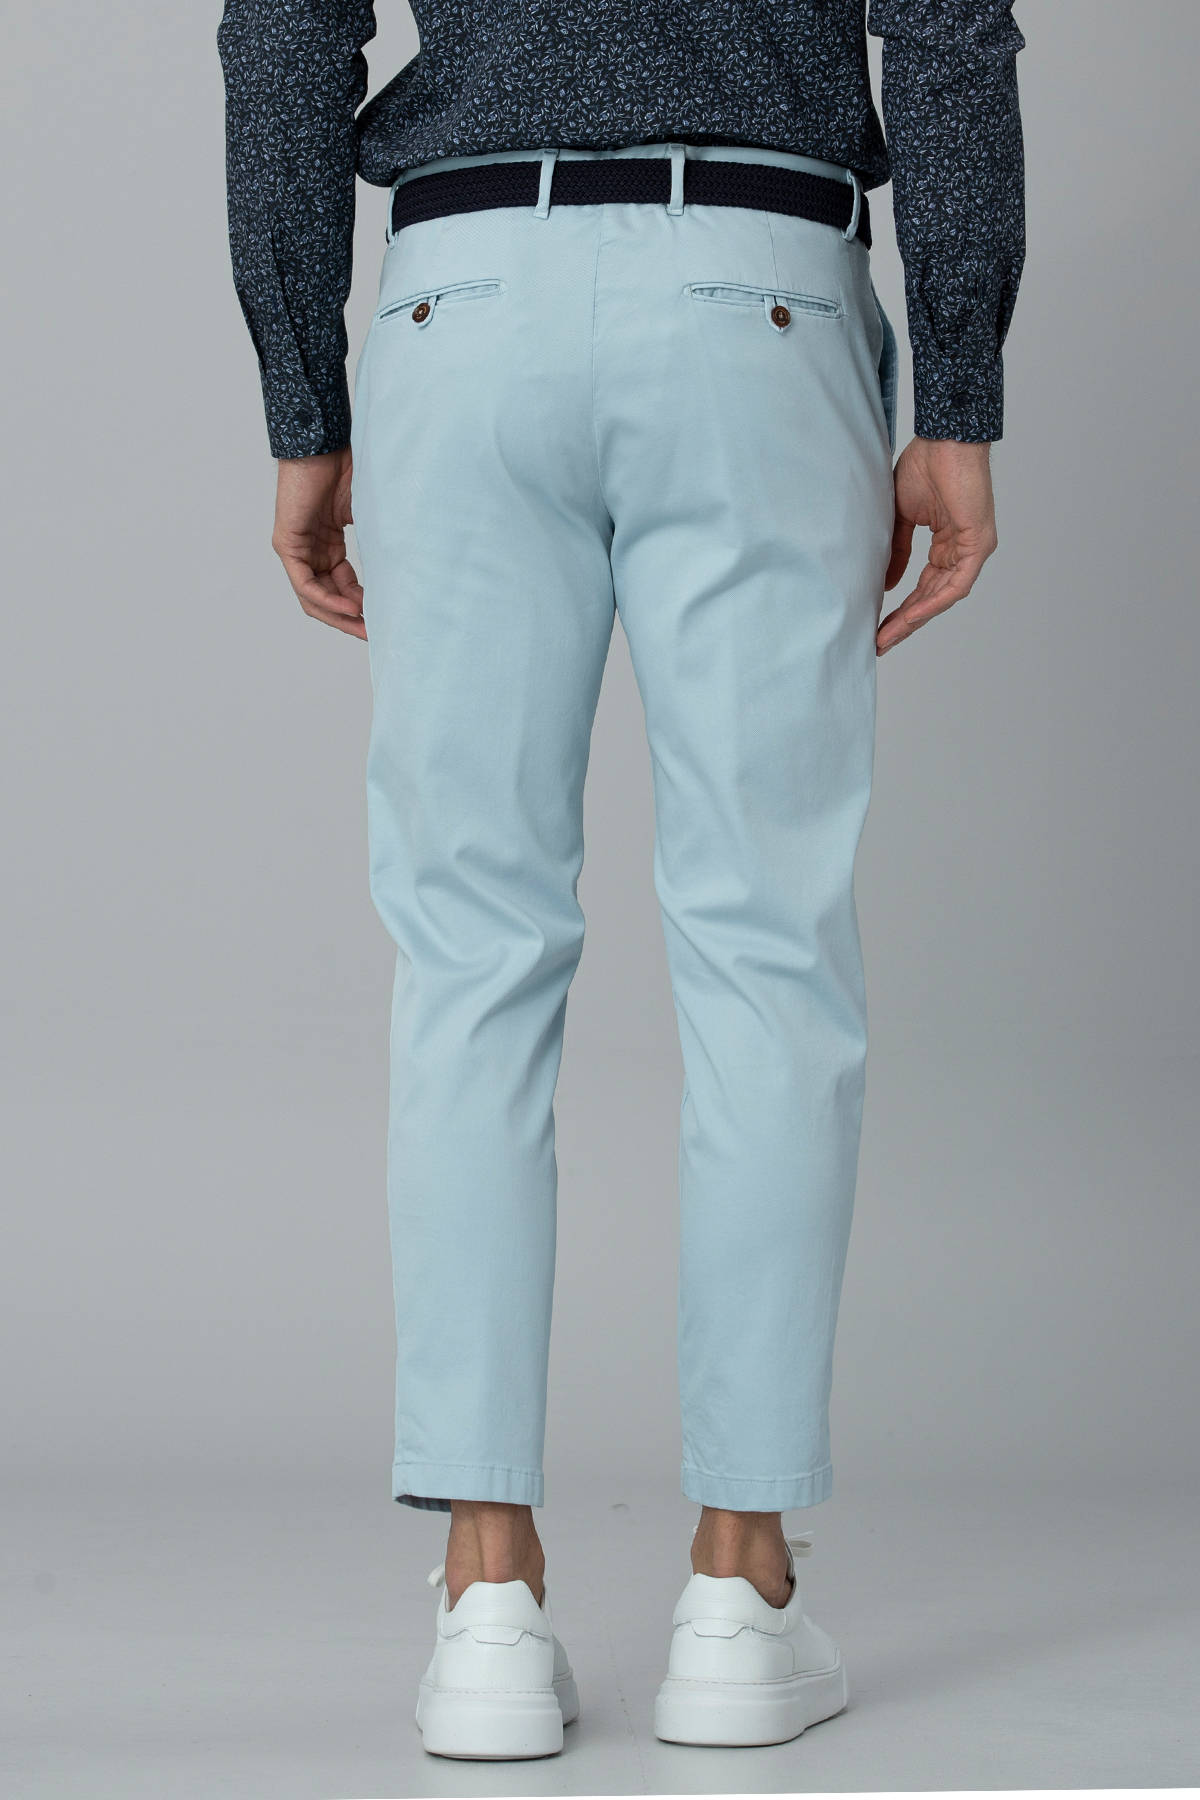 Cashılla Spor Erkek Chino Pantolon Slim Fit Mavi